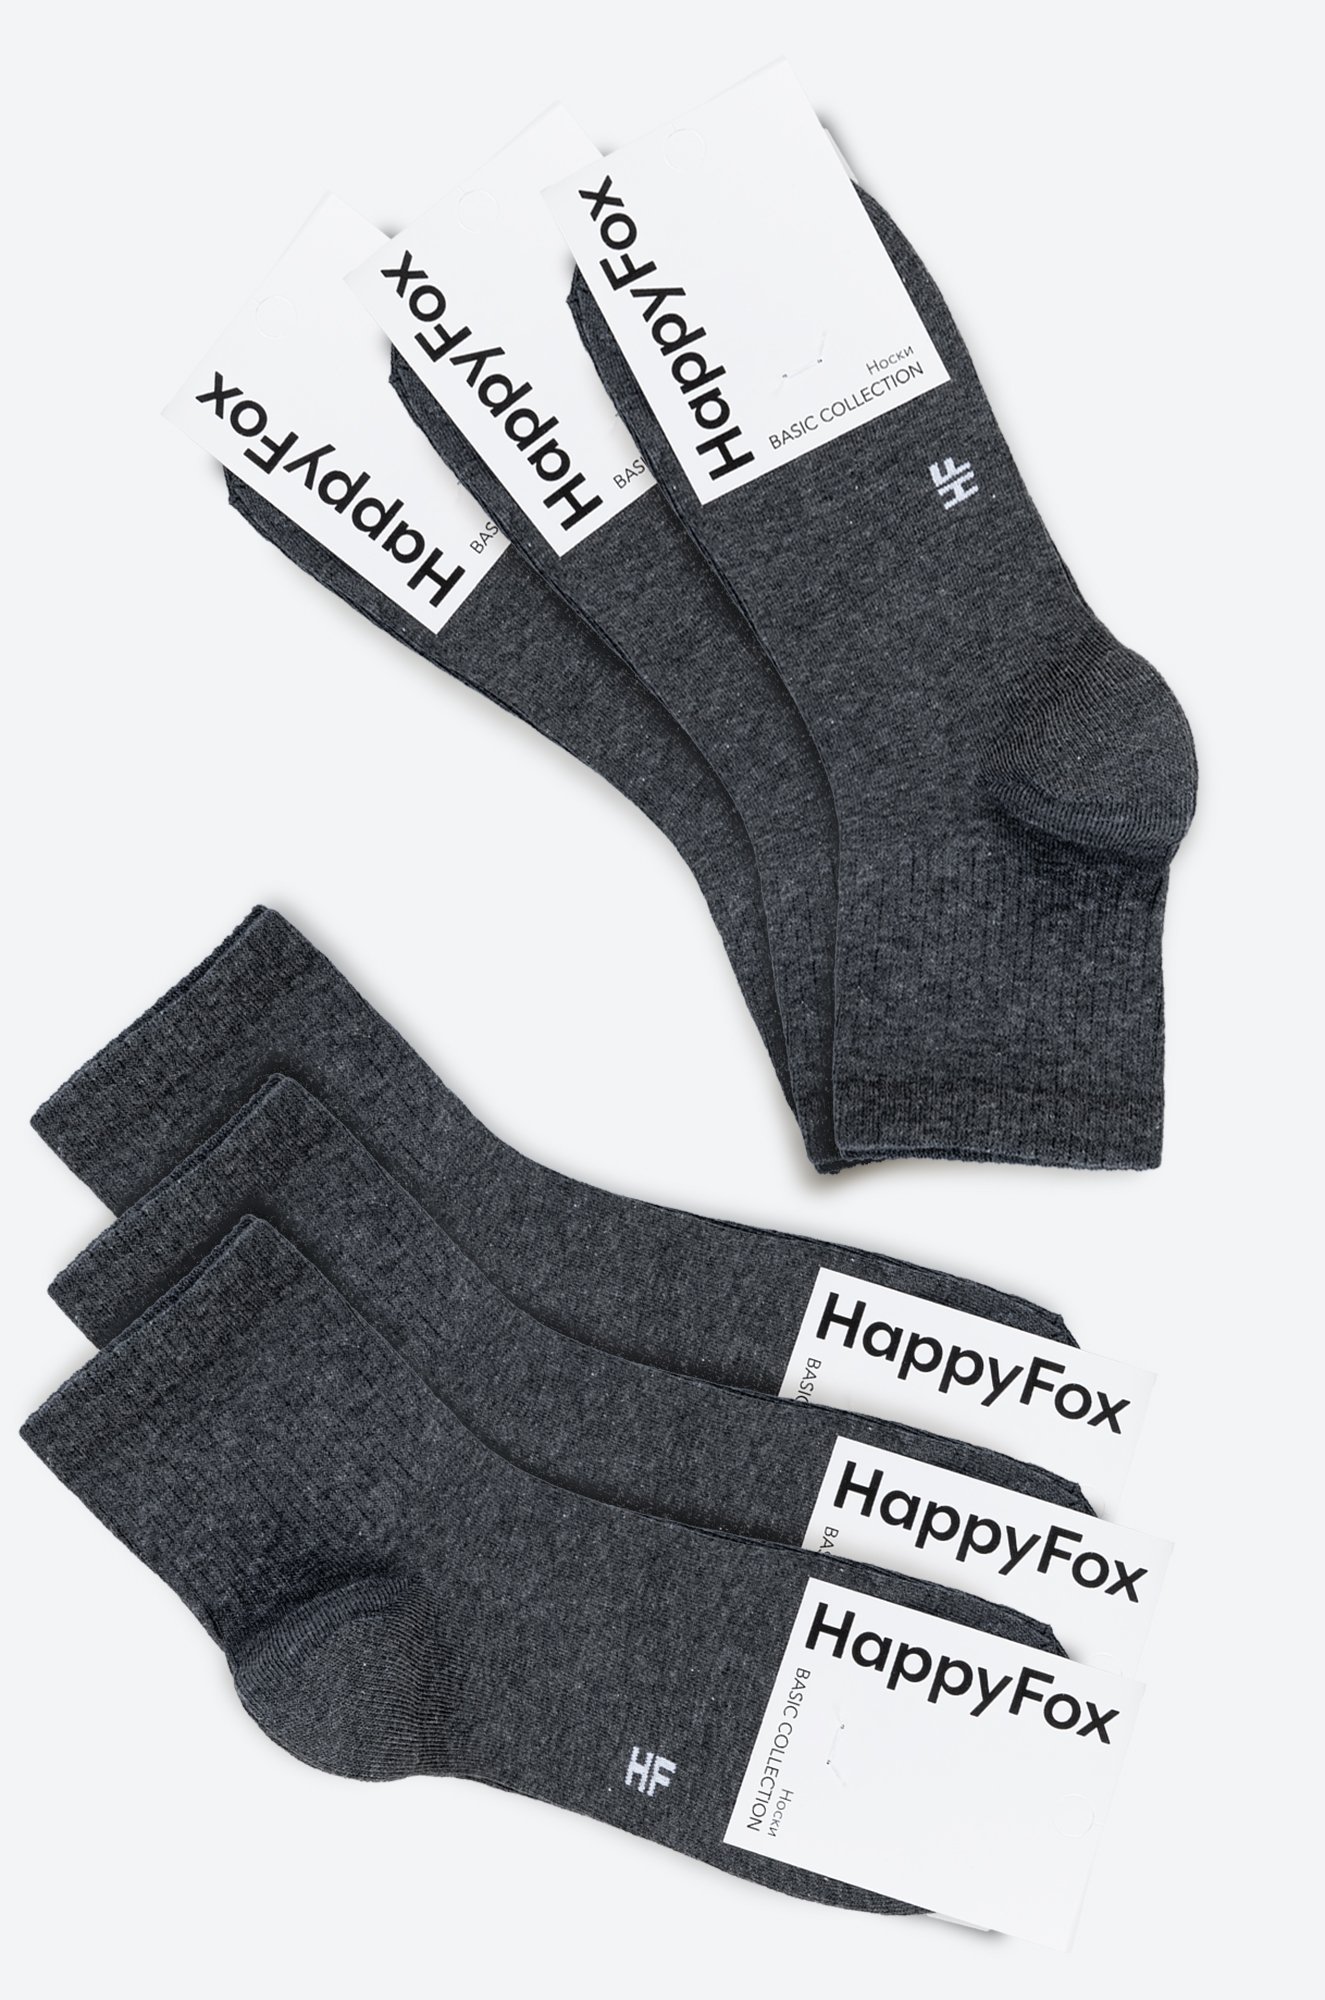 6 пар спортивных носков с резинкой Happy Fox